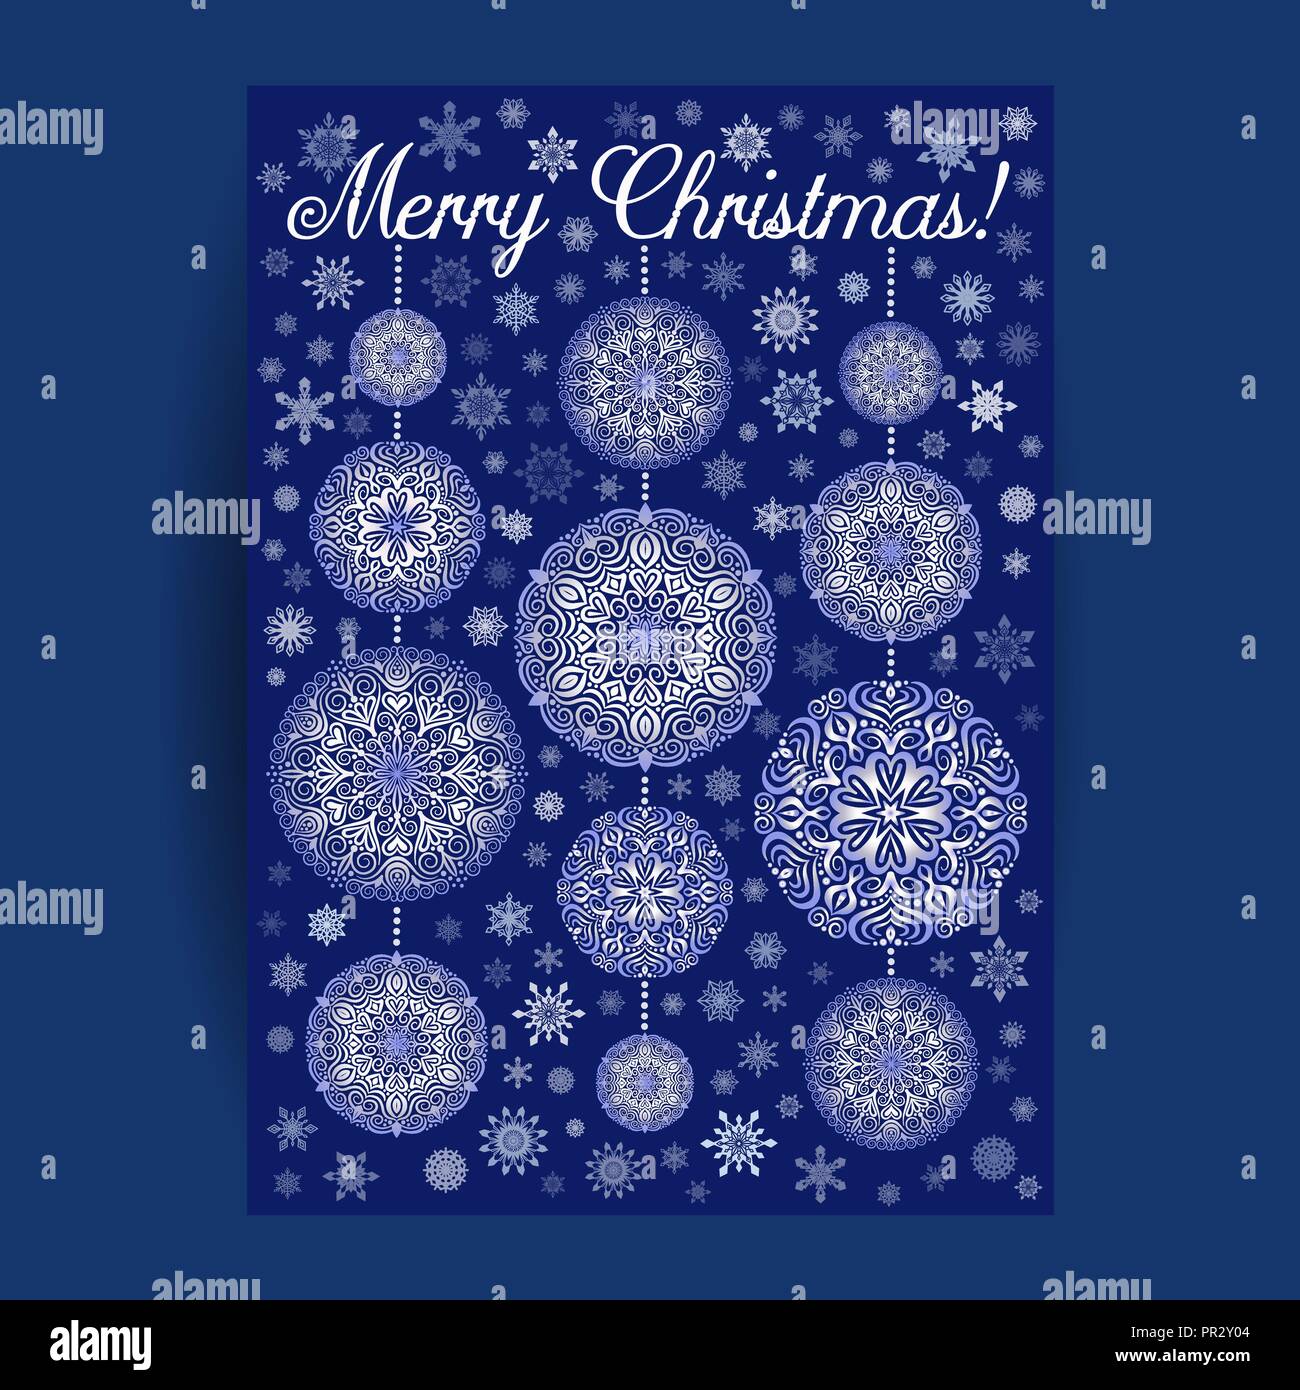 Weihnachtskarte mit Mandala Schneeflocken auf blauem Hintergrund Stock Vektor